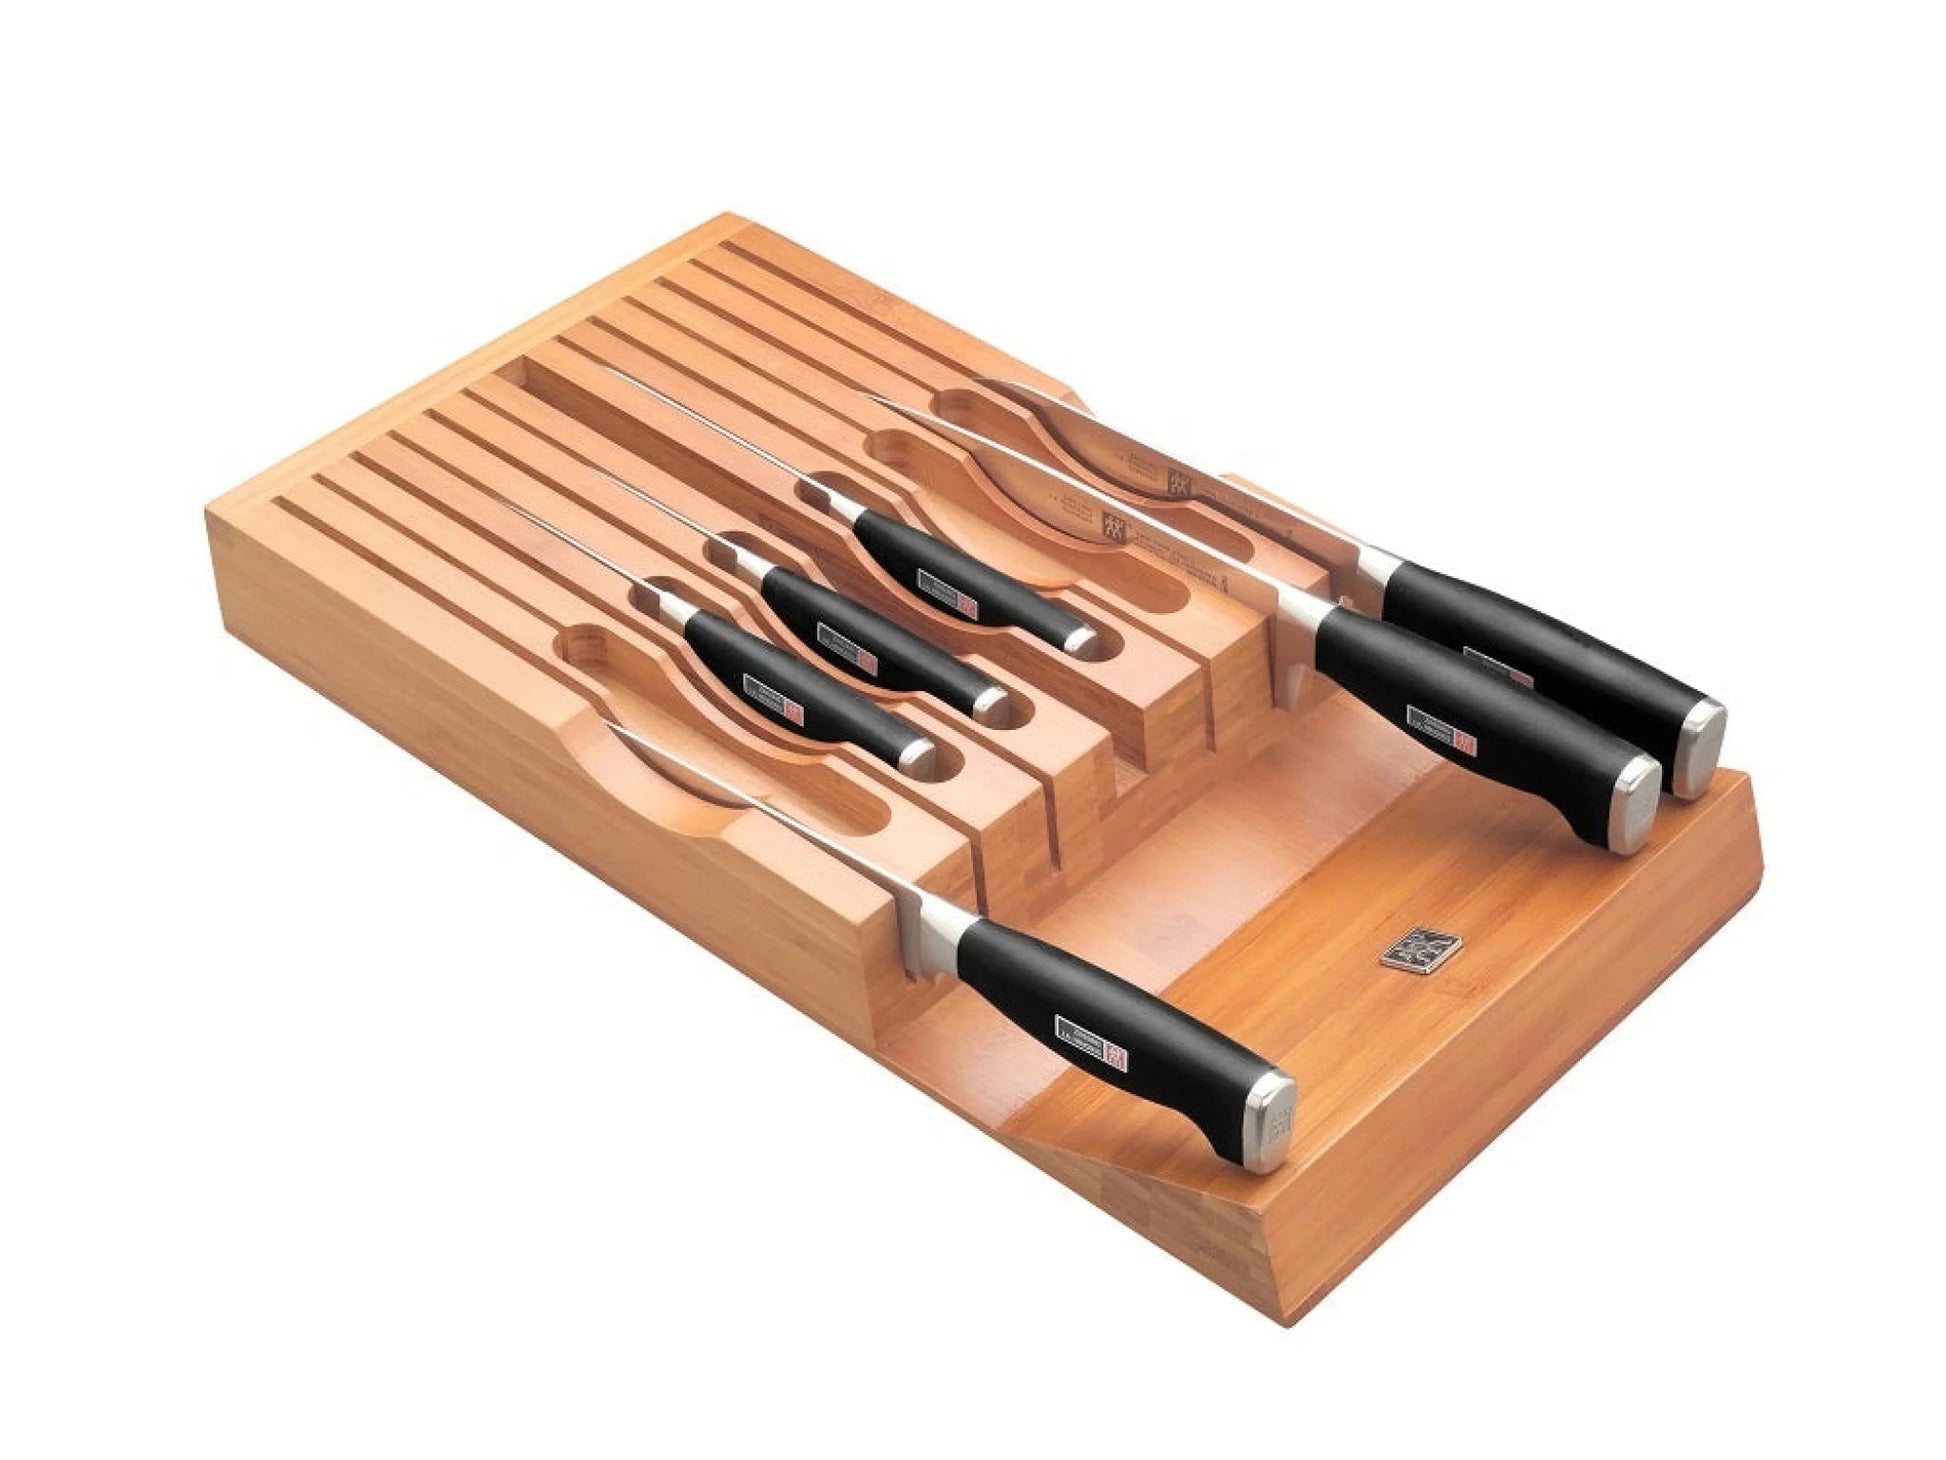 Rangement pour couteaux en bamboo - Tirroir -